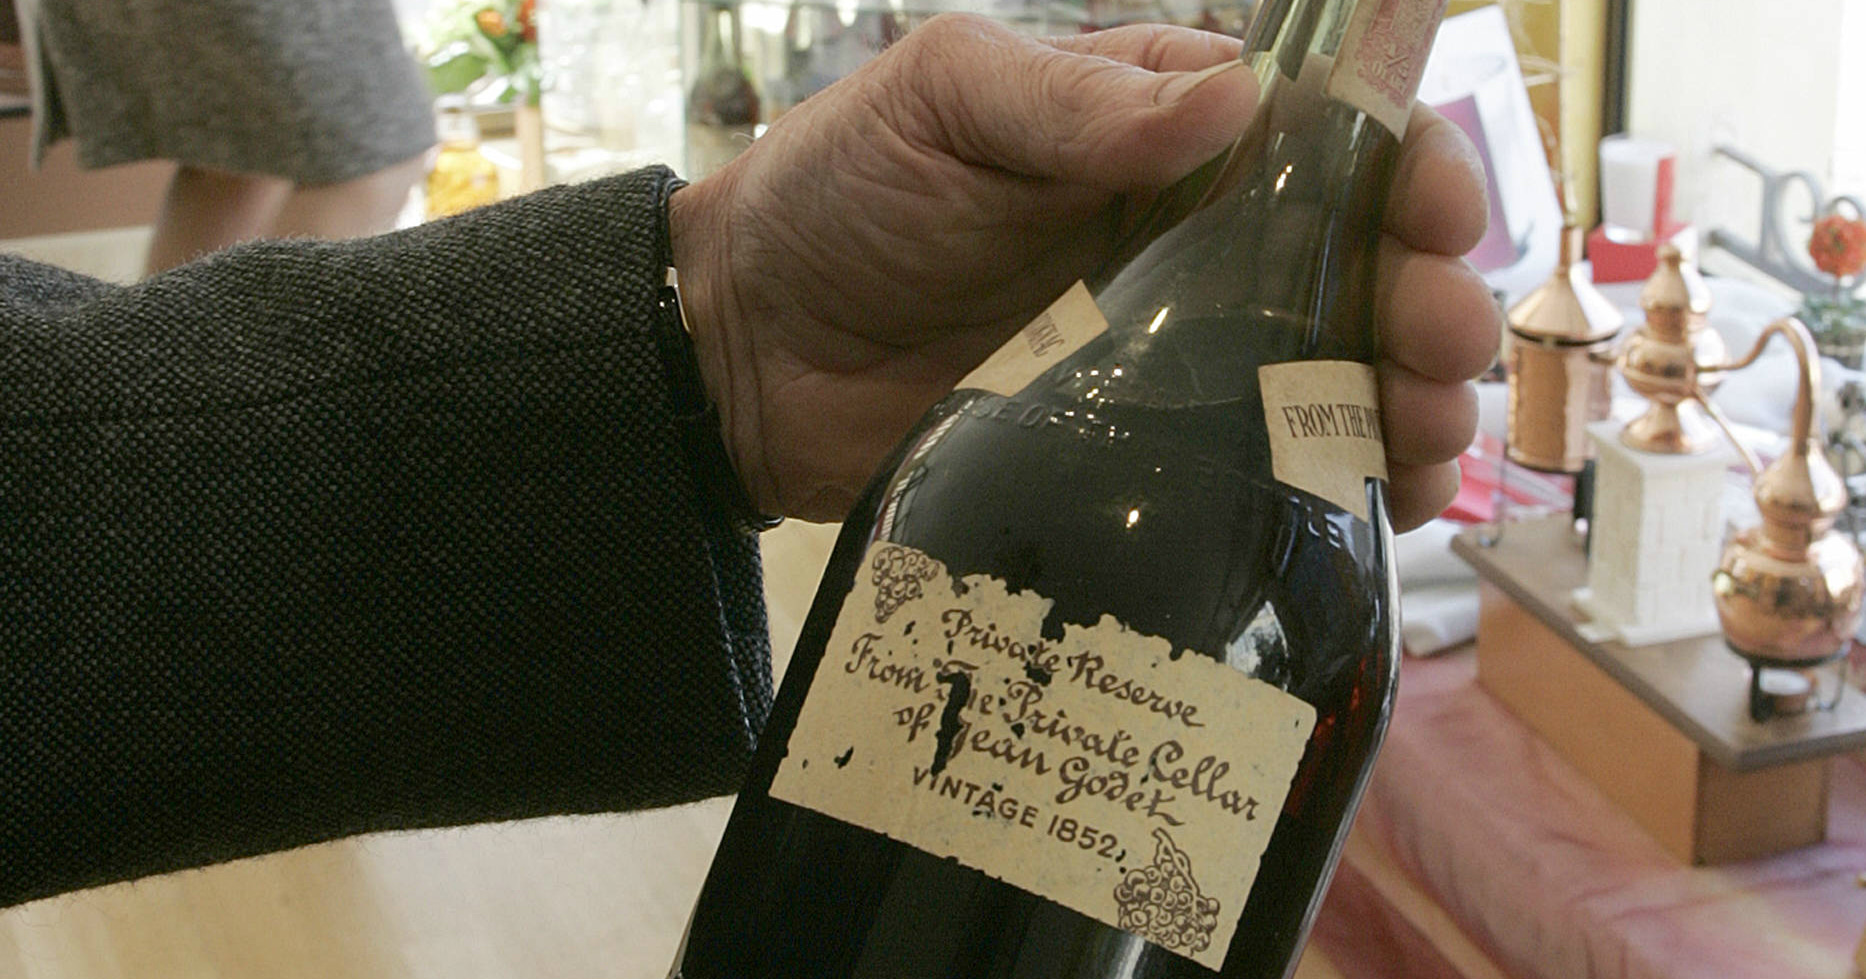 Láhev starého koňaku Godet. V roce 2008 byla prodána za 3000 euro, v dnešním přepočtu 80 tisíc korun.